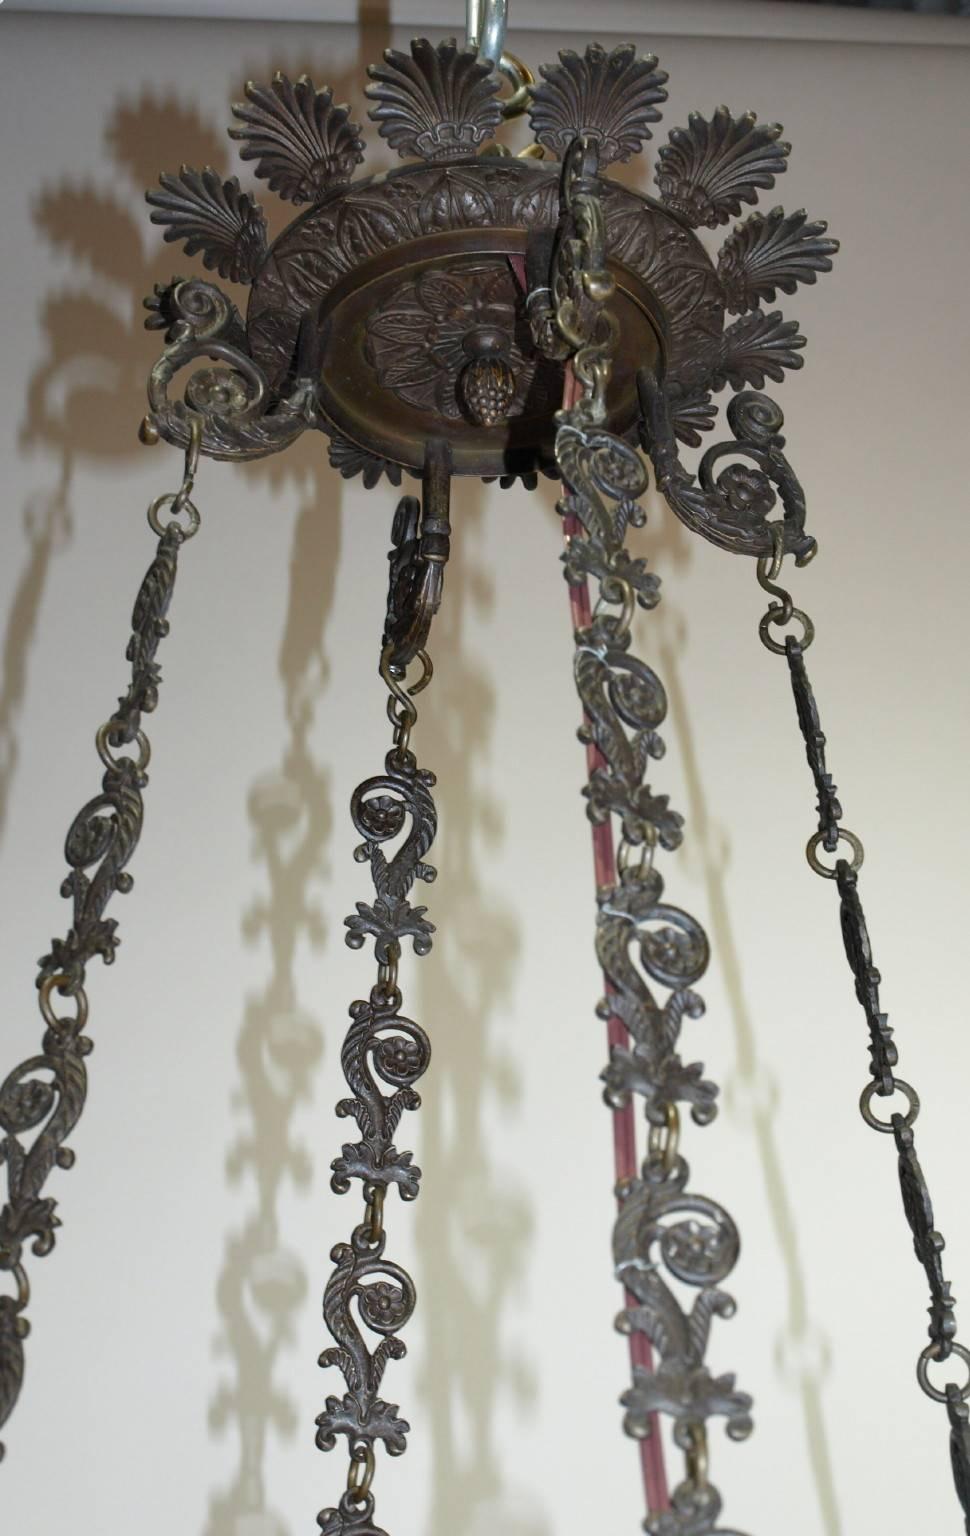 Hochwertiger achtflammiger Kronleuchter im Empire-Stil aus Bronze mit exquisiten Details. Ursprünglich für Kerzen, jetzt elektrifiziert.